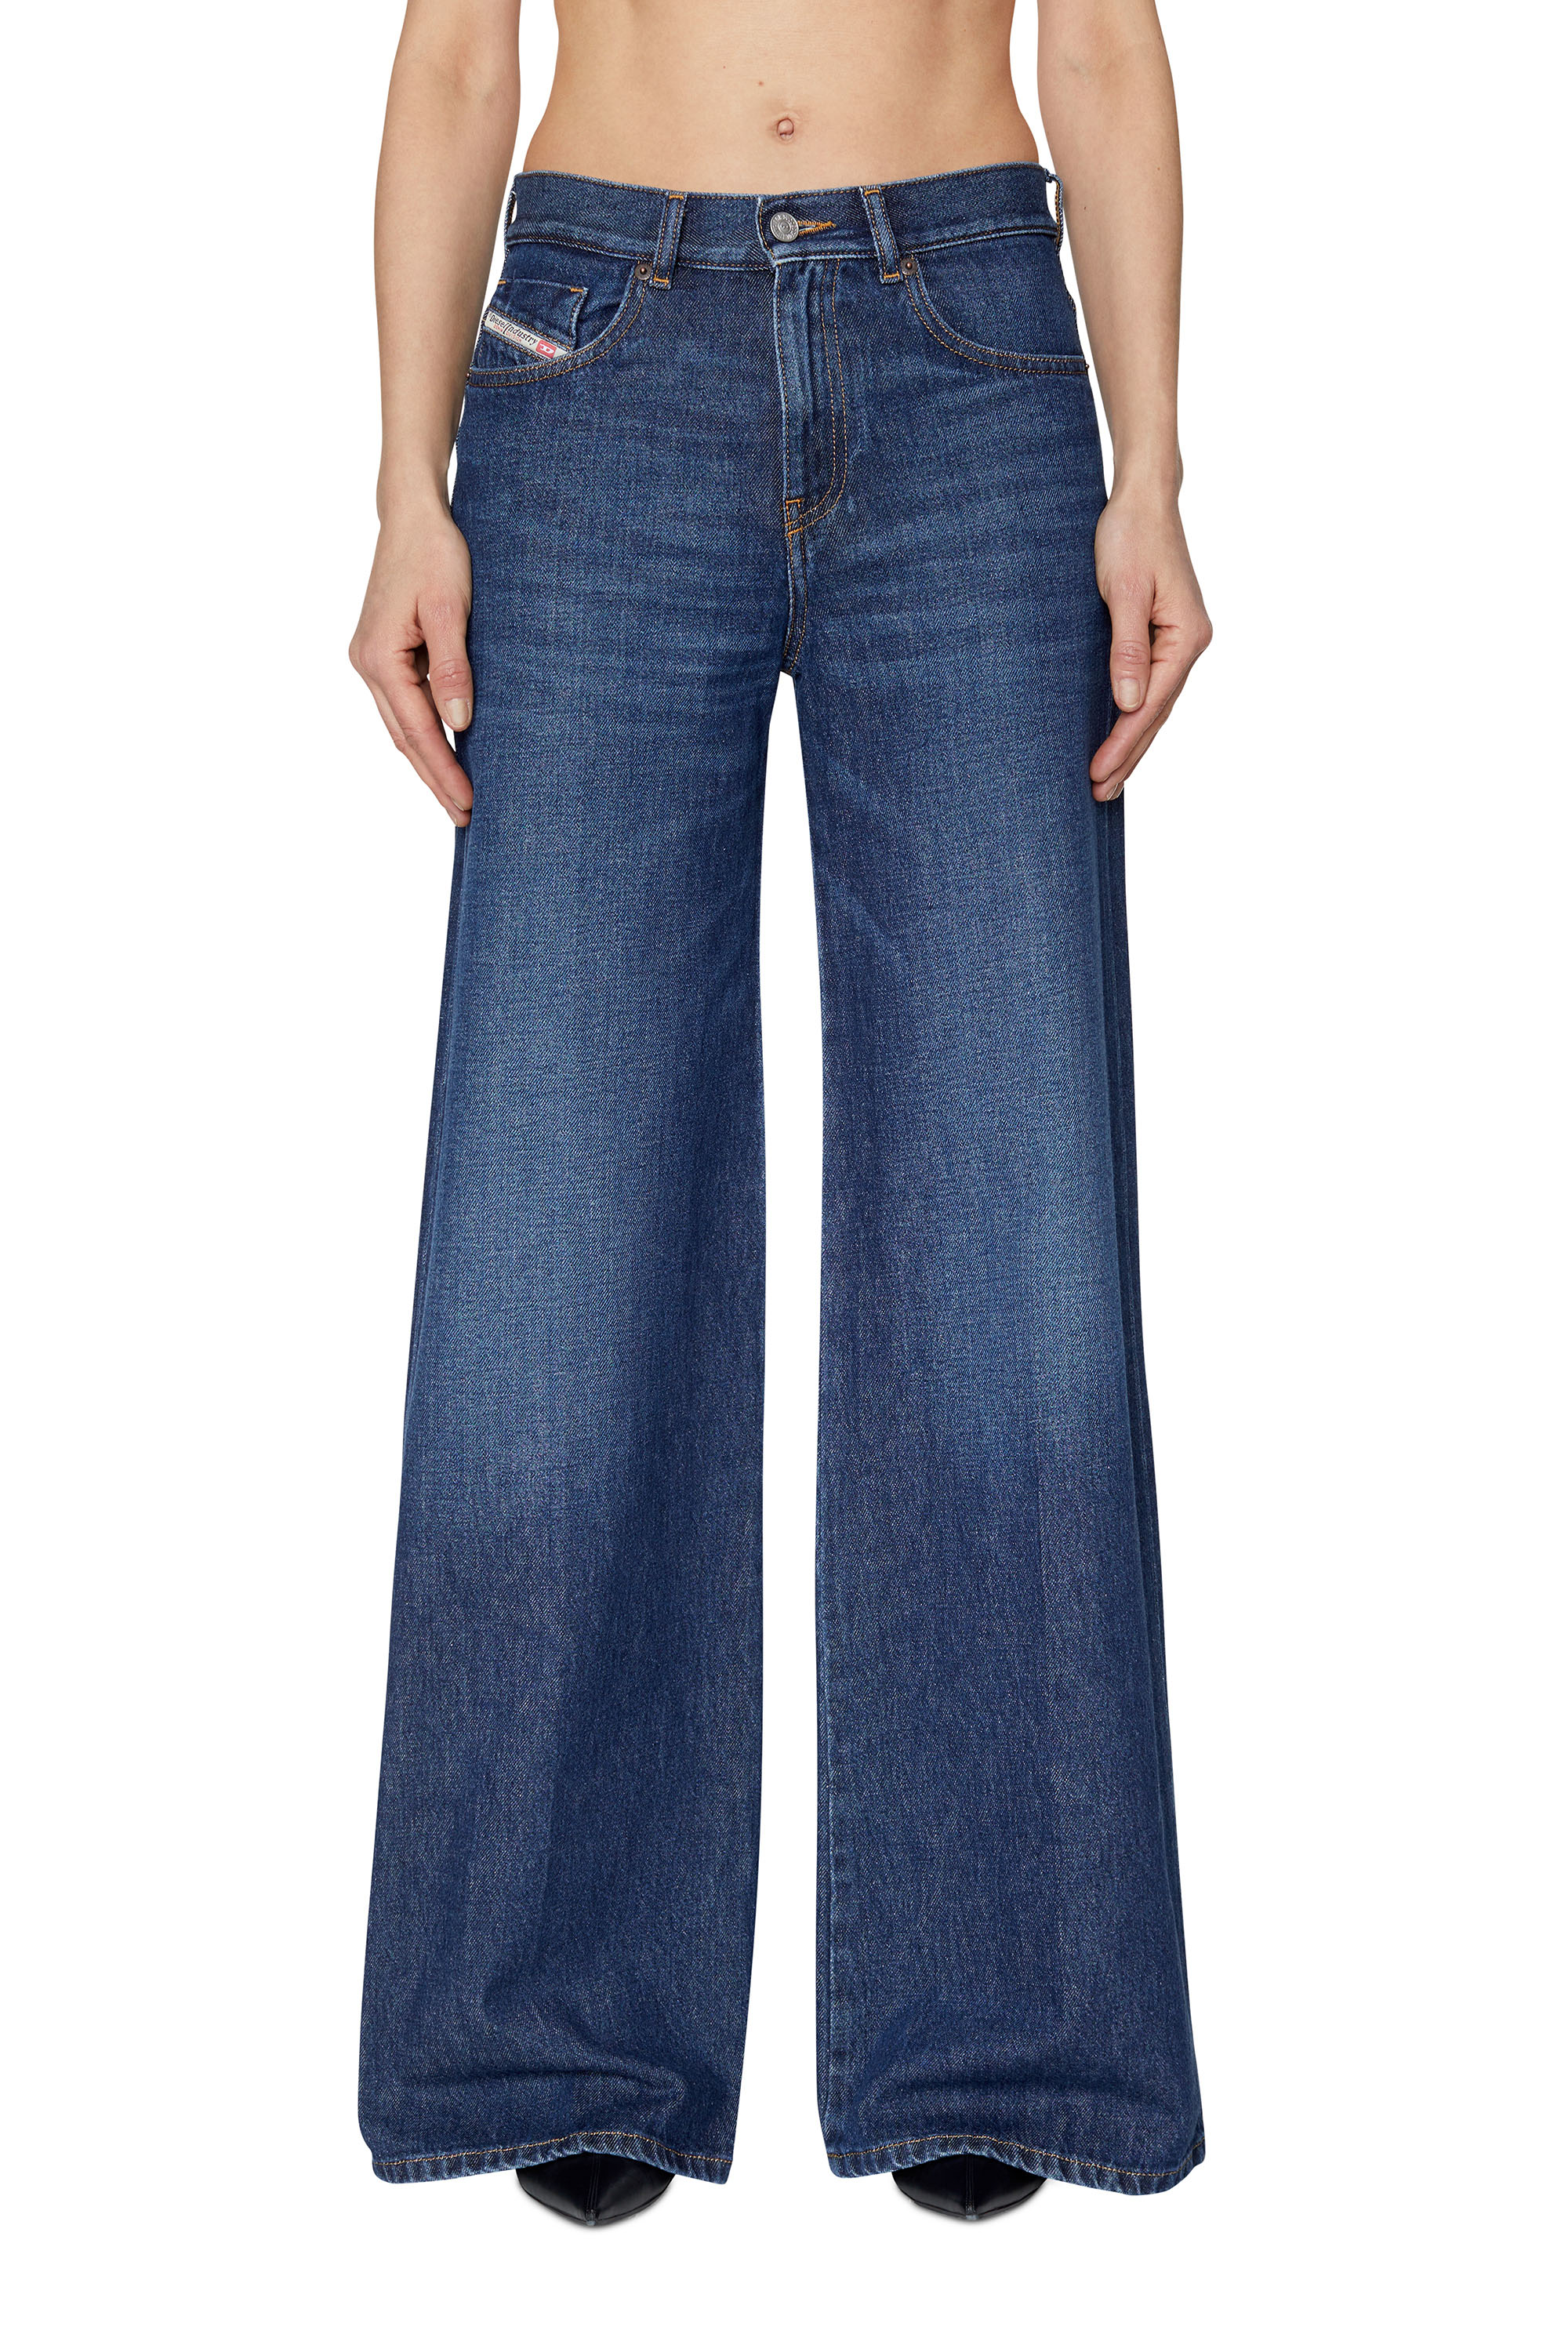 Damen Bekleidung Jeans Jeans mit gerader Passform DIESEL Denim Halbhohe Straight-Leg-Jeans in Blau 